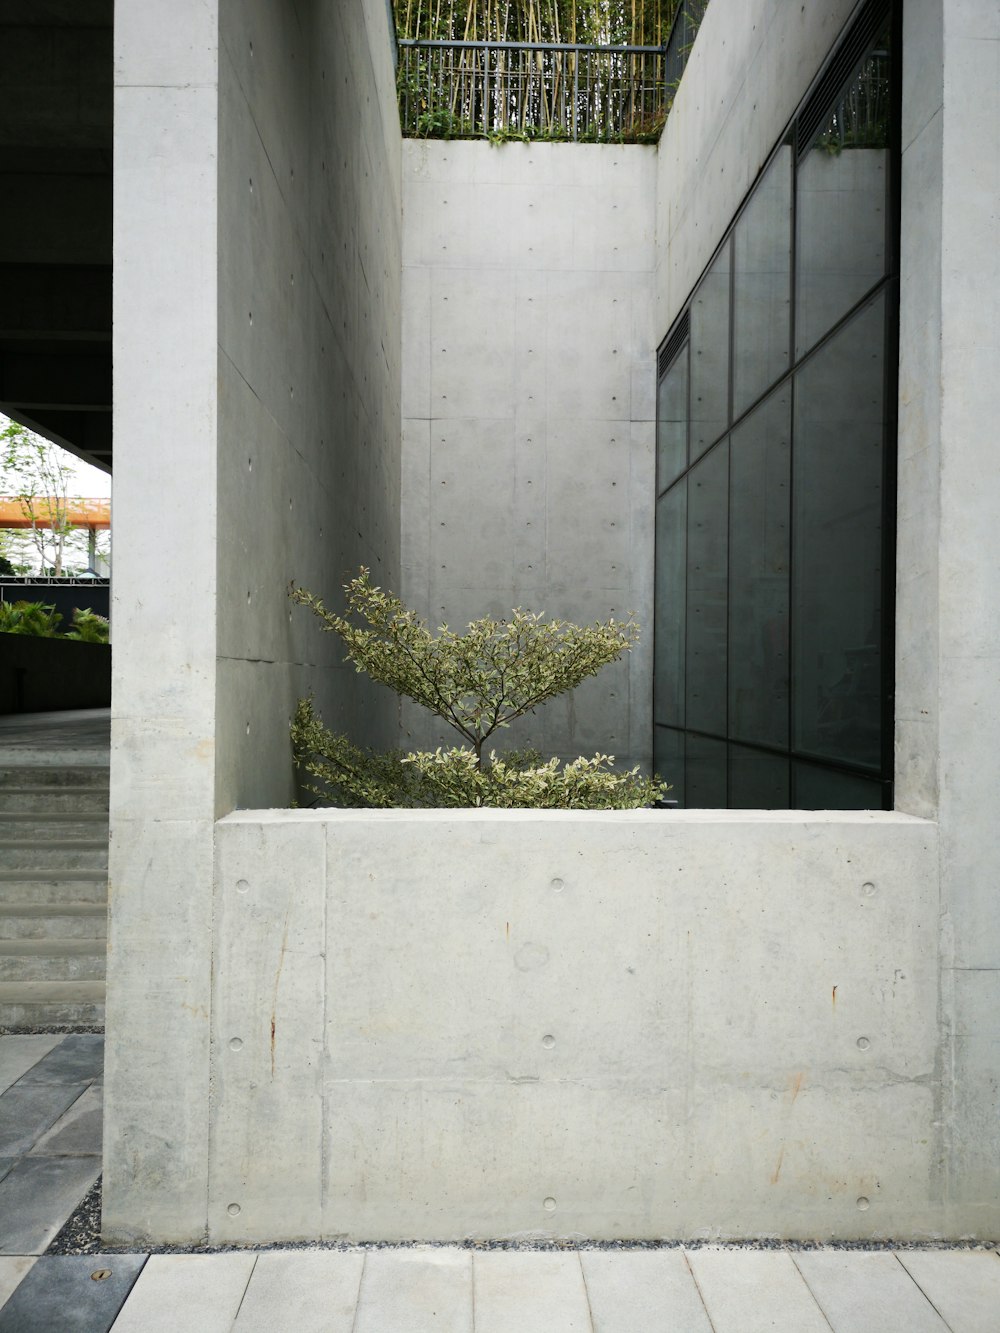 Foto der Pflanze neben Glas